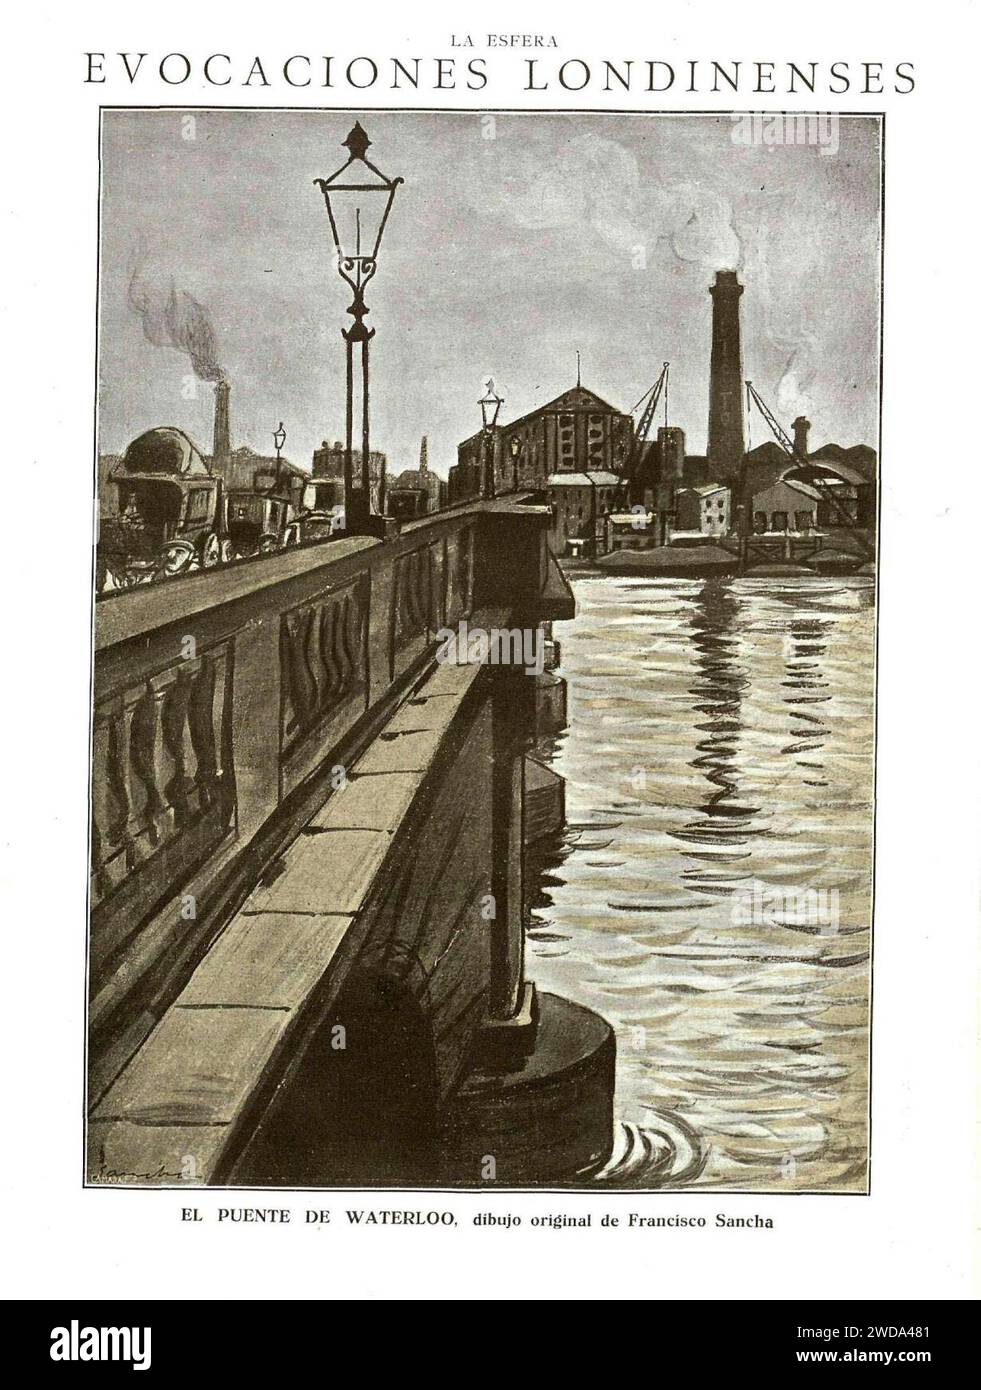 28. April 1923, La Esfera, Evocaciones londinenses. – El puente de Waterloo, Sancha. Stockfoto